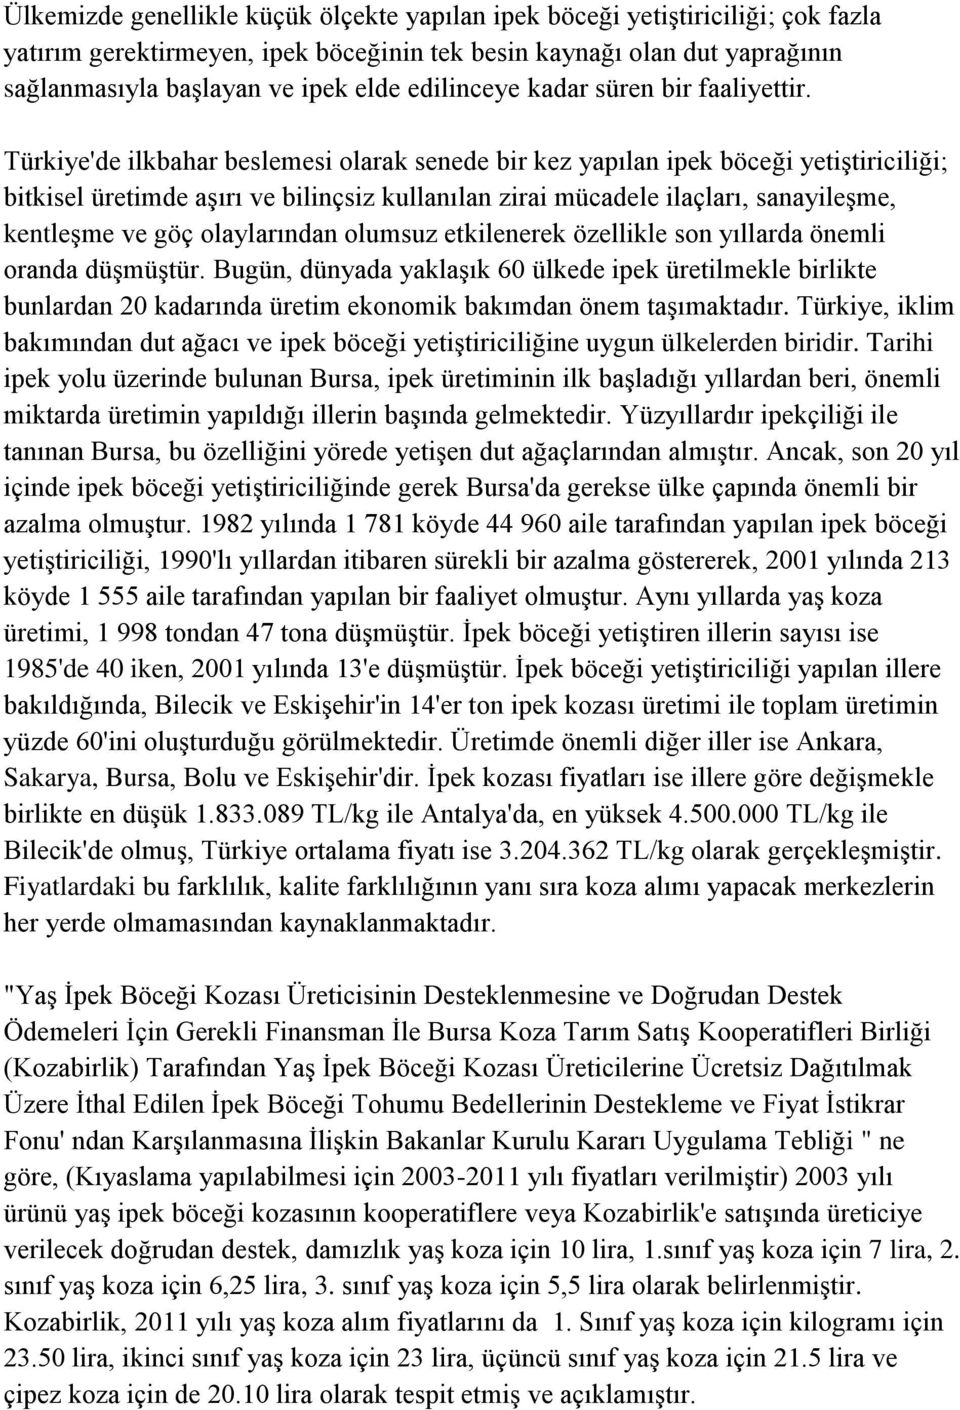 Türkiye'de ilkbahar beslemesi olarak senede bir kez yapılan ipek böceği yetiştiriciliği; bitkisel üretimde aşırı ve bilinçsiz kullanılan zirai mücadele ilaçları, sanayileşme, kentleşme ve göç